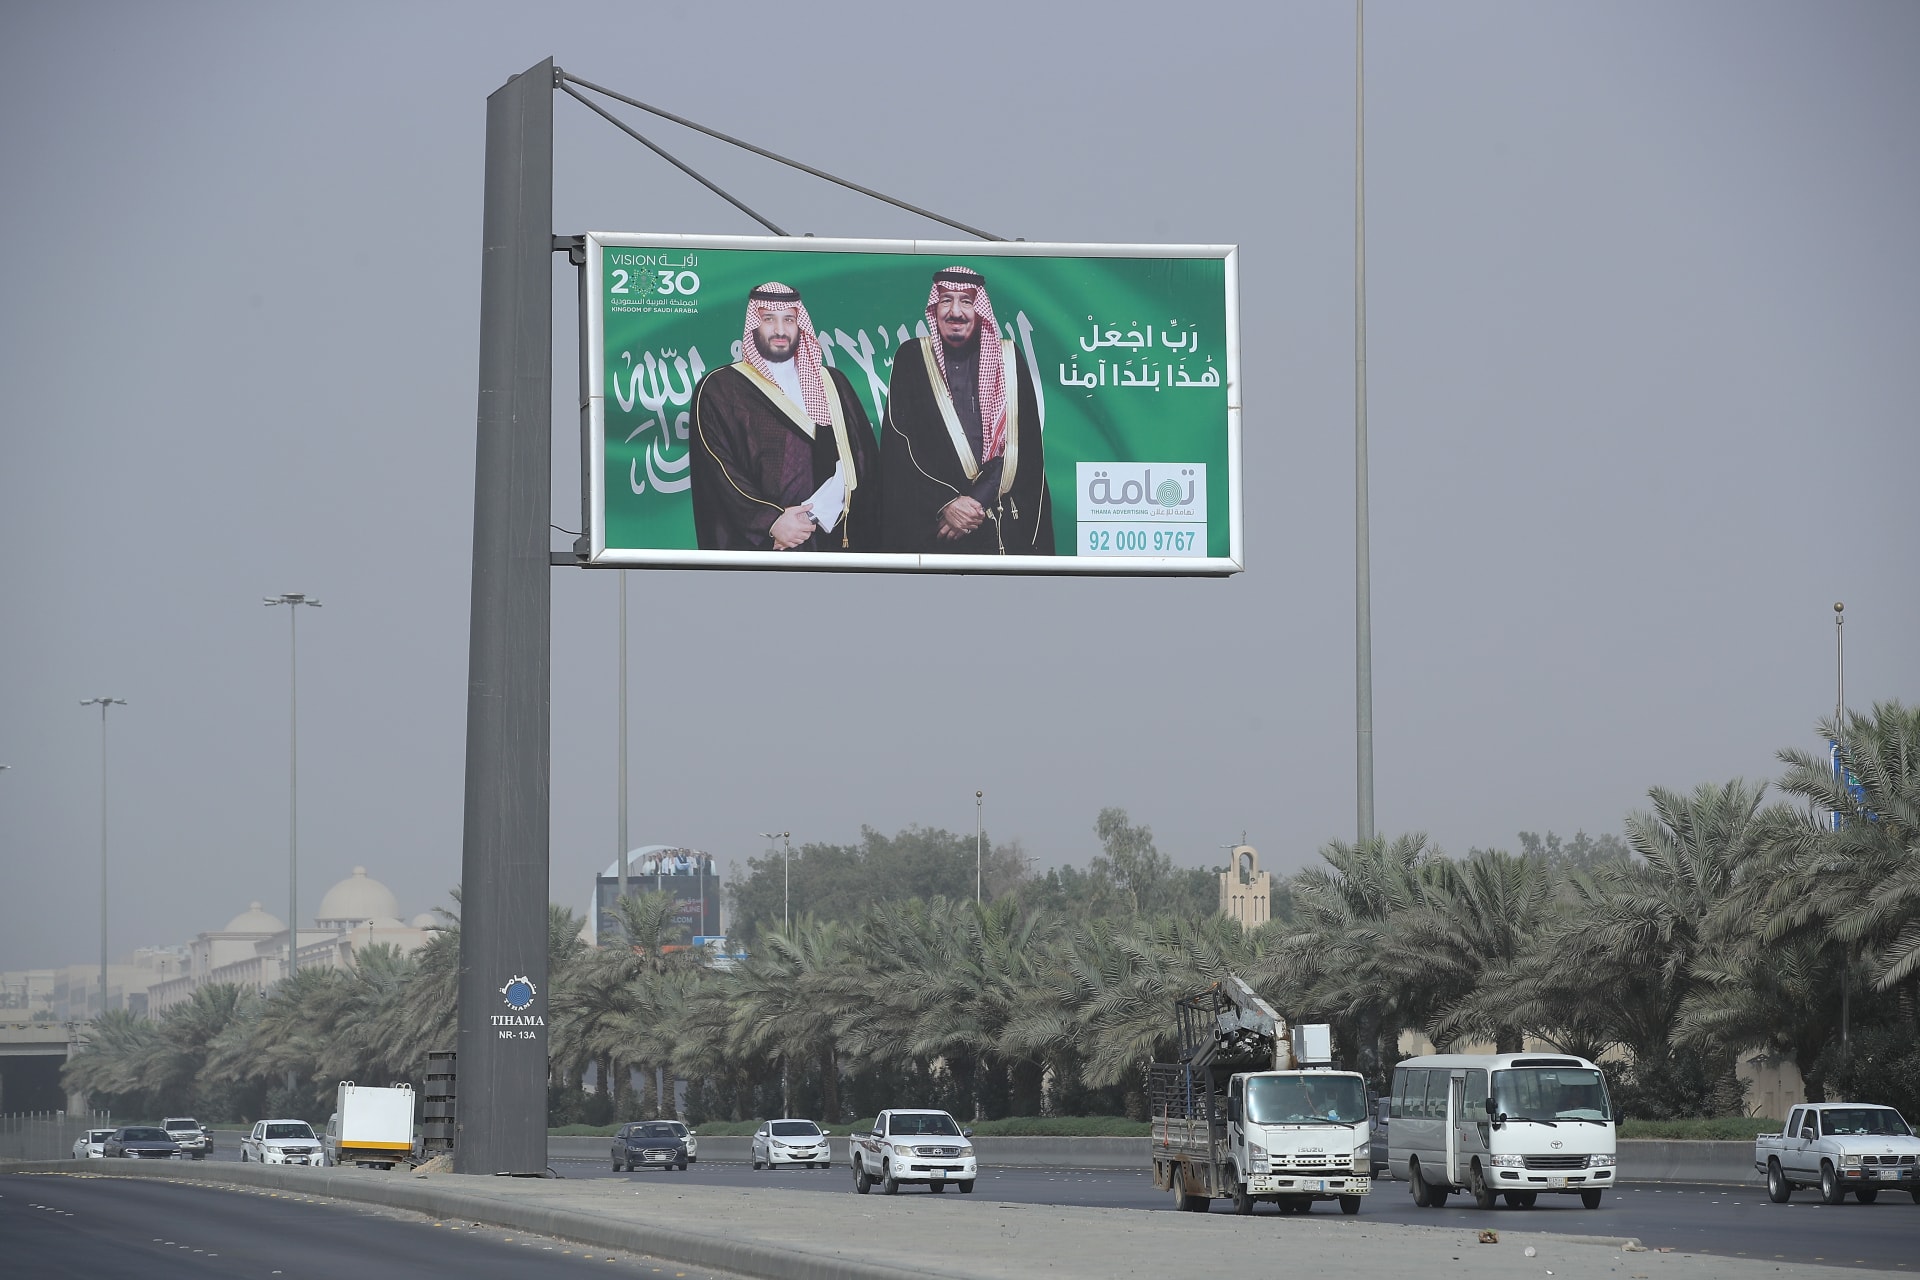 السعودية.. تعرف على أهداف "استراتيجية قطاع الطرق" التي أعلن عنها مجلس الوزراء